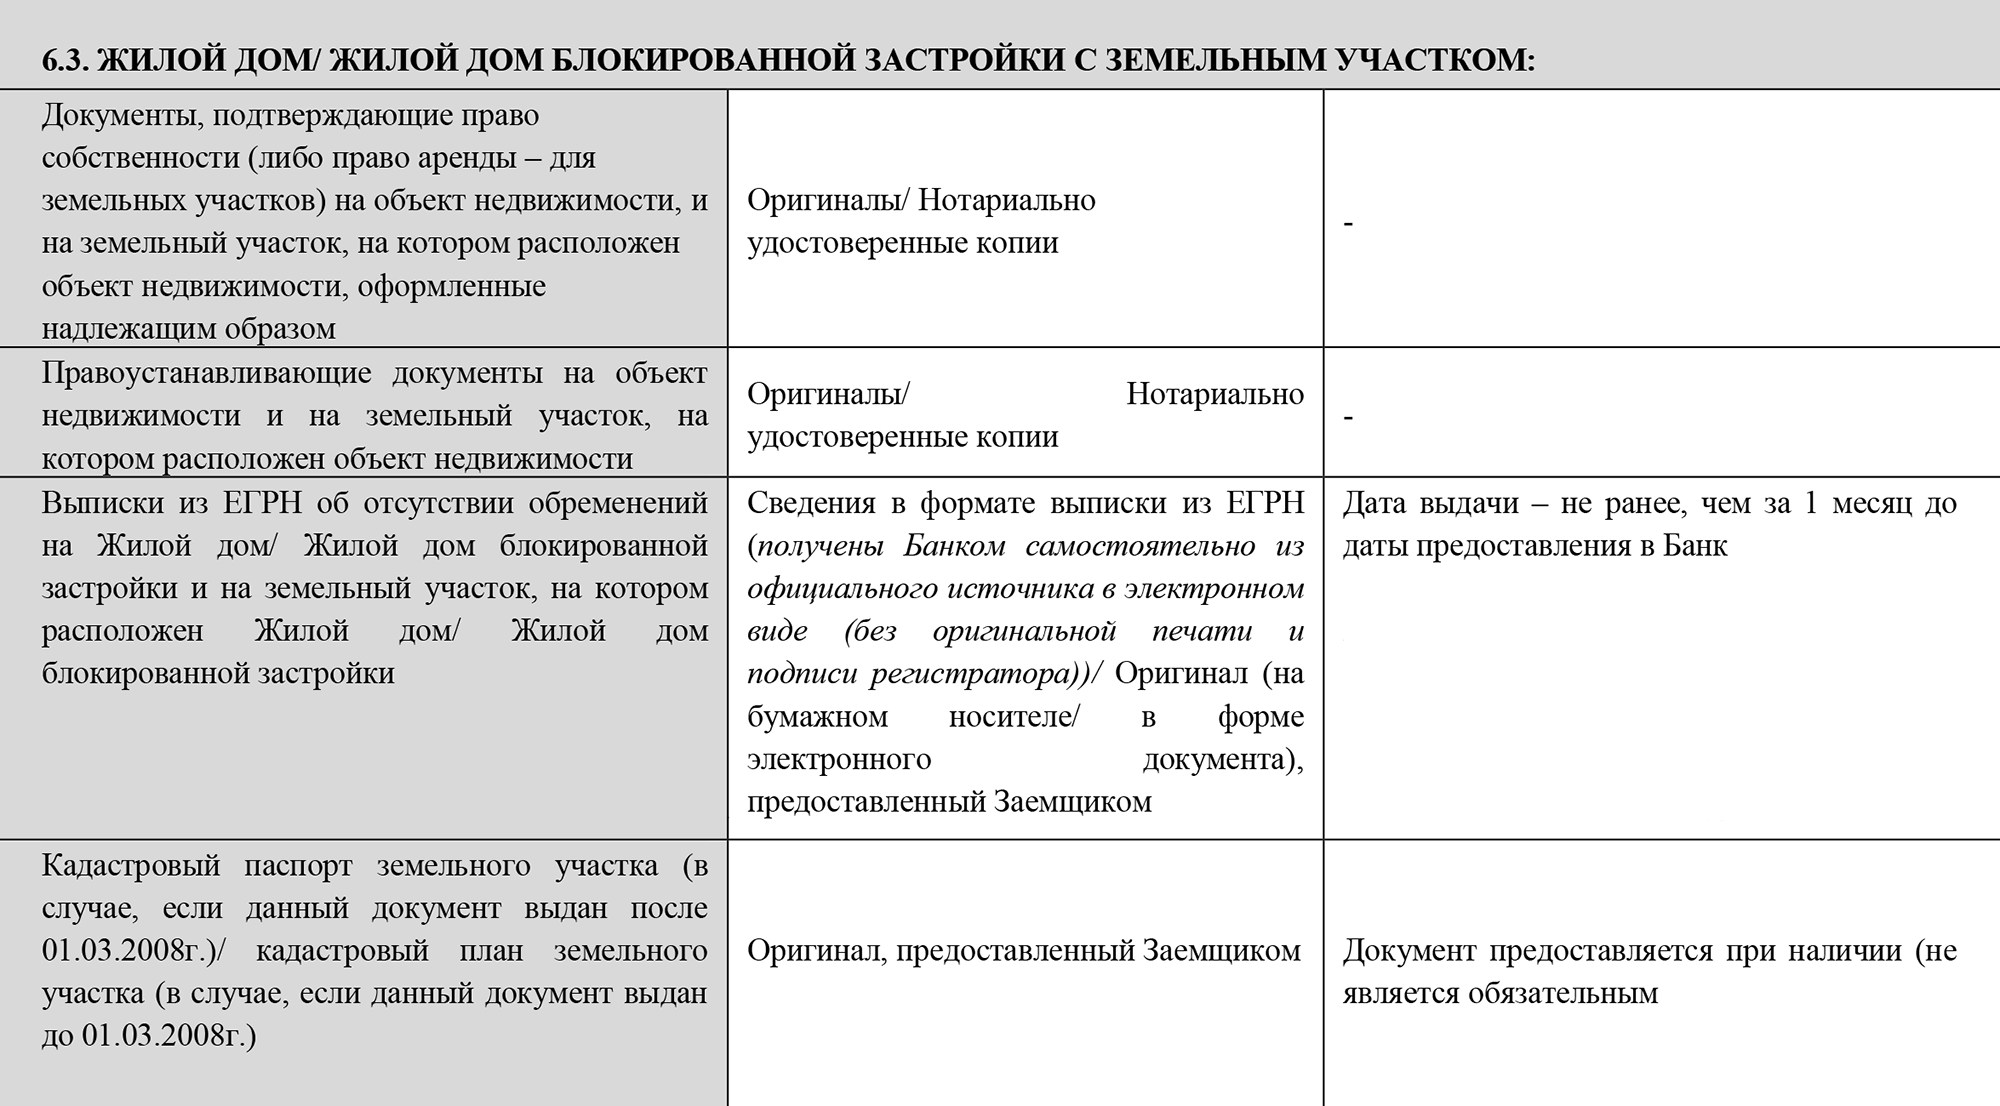 Например, для банка «Санкт-Петербург» кадастровый паспорт участка — необязательный документ, а правоустанавливающие документы на дом и участок обязательны. Источник: bspb.ru